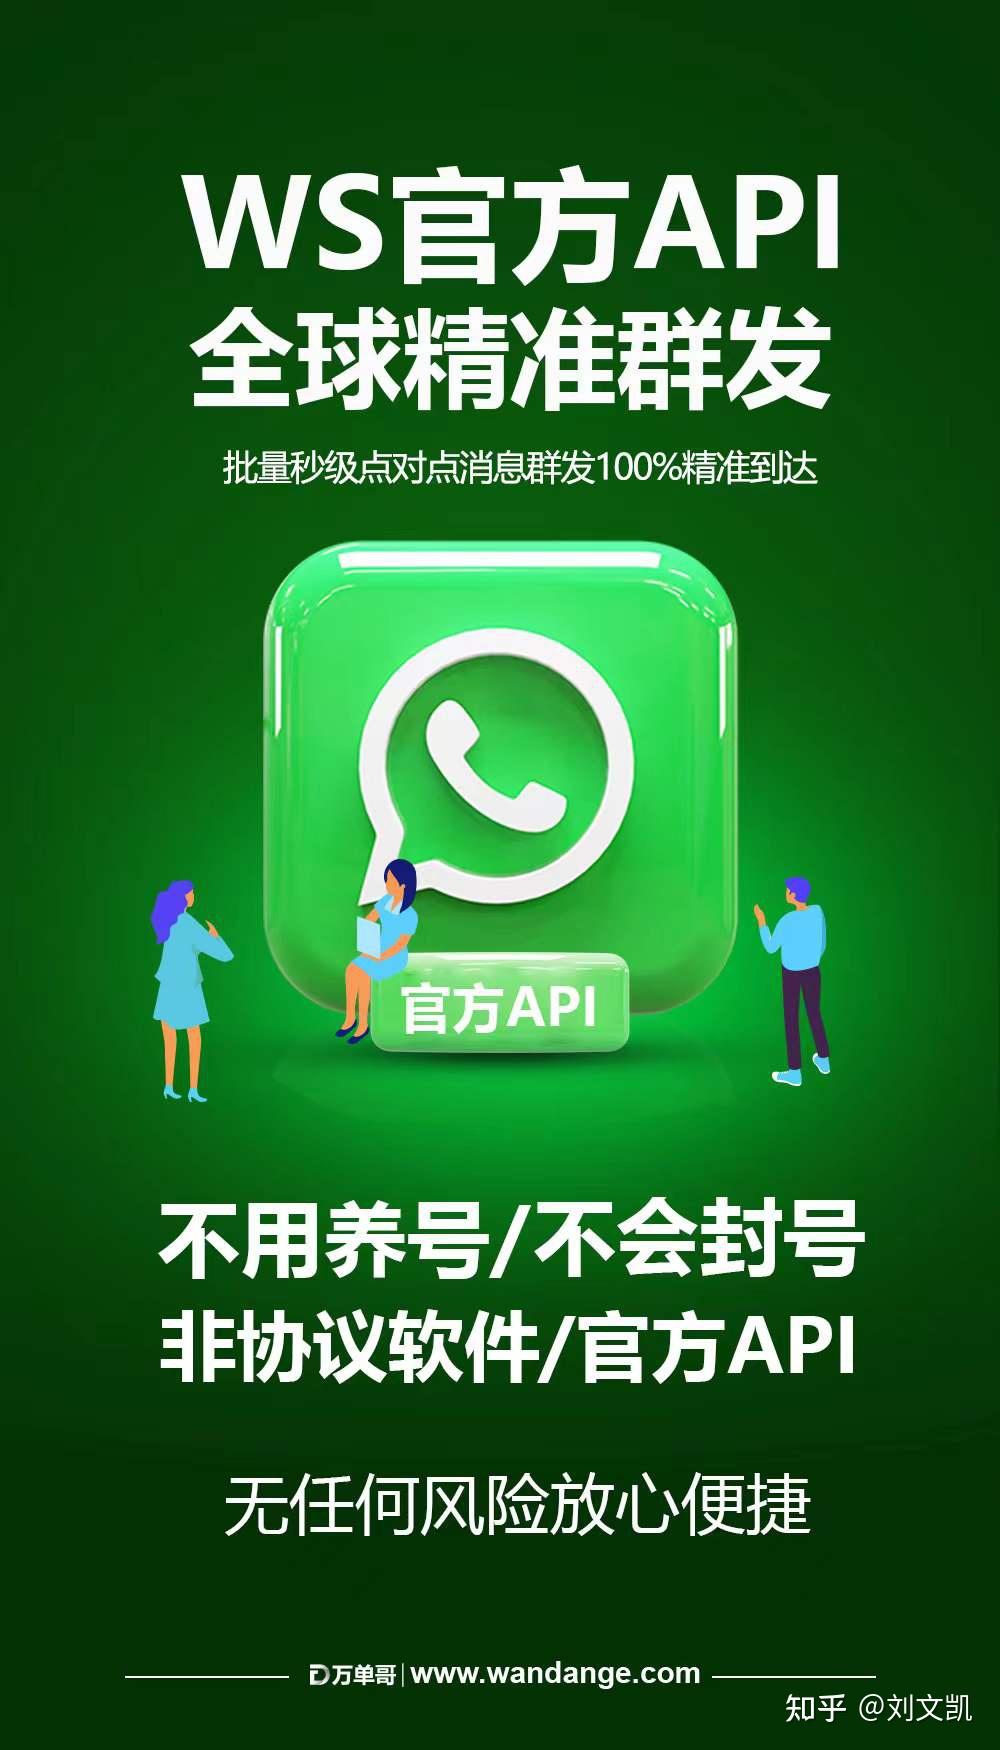 whatsapp正版下载-如何确保下载正版 WhatsApp